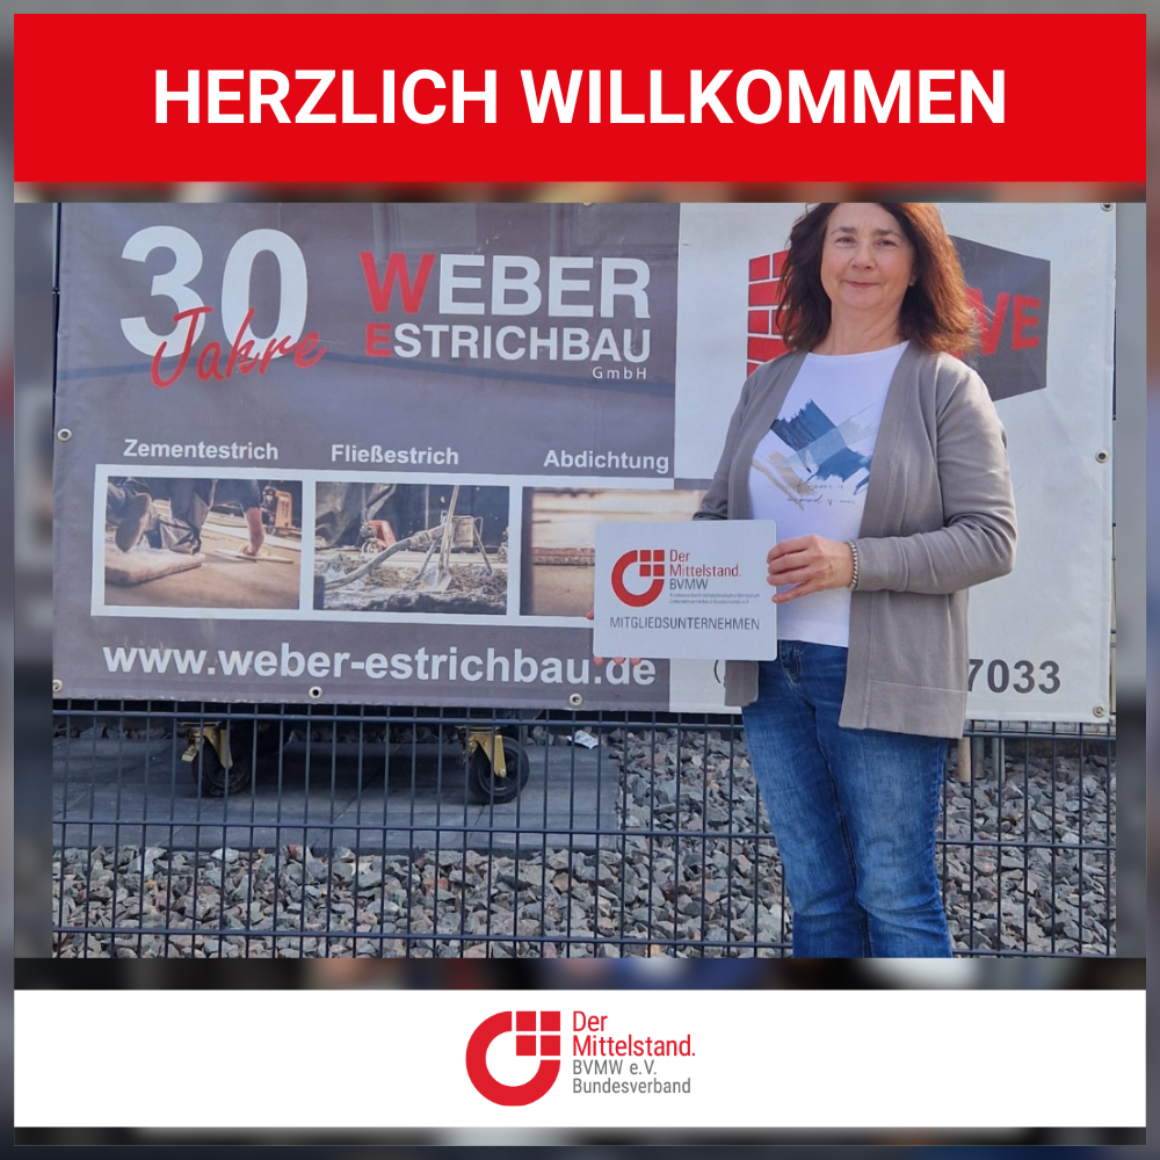 HW Weber Estrichbau GmbH